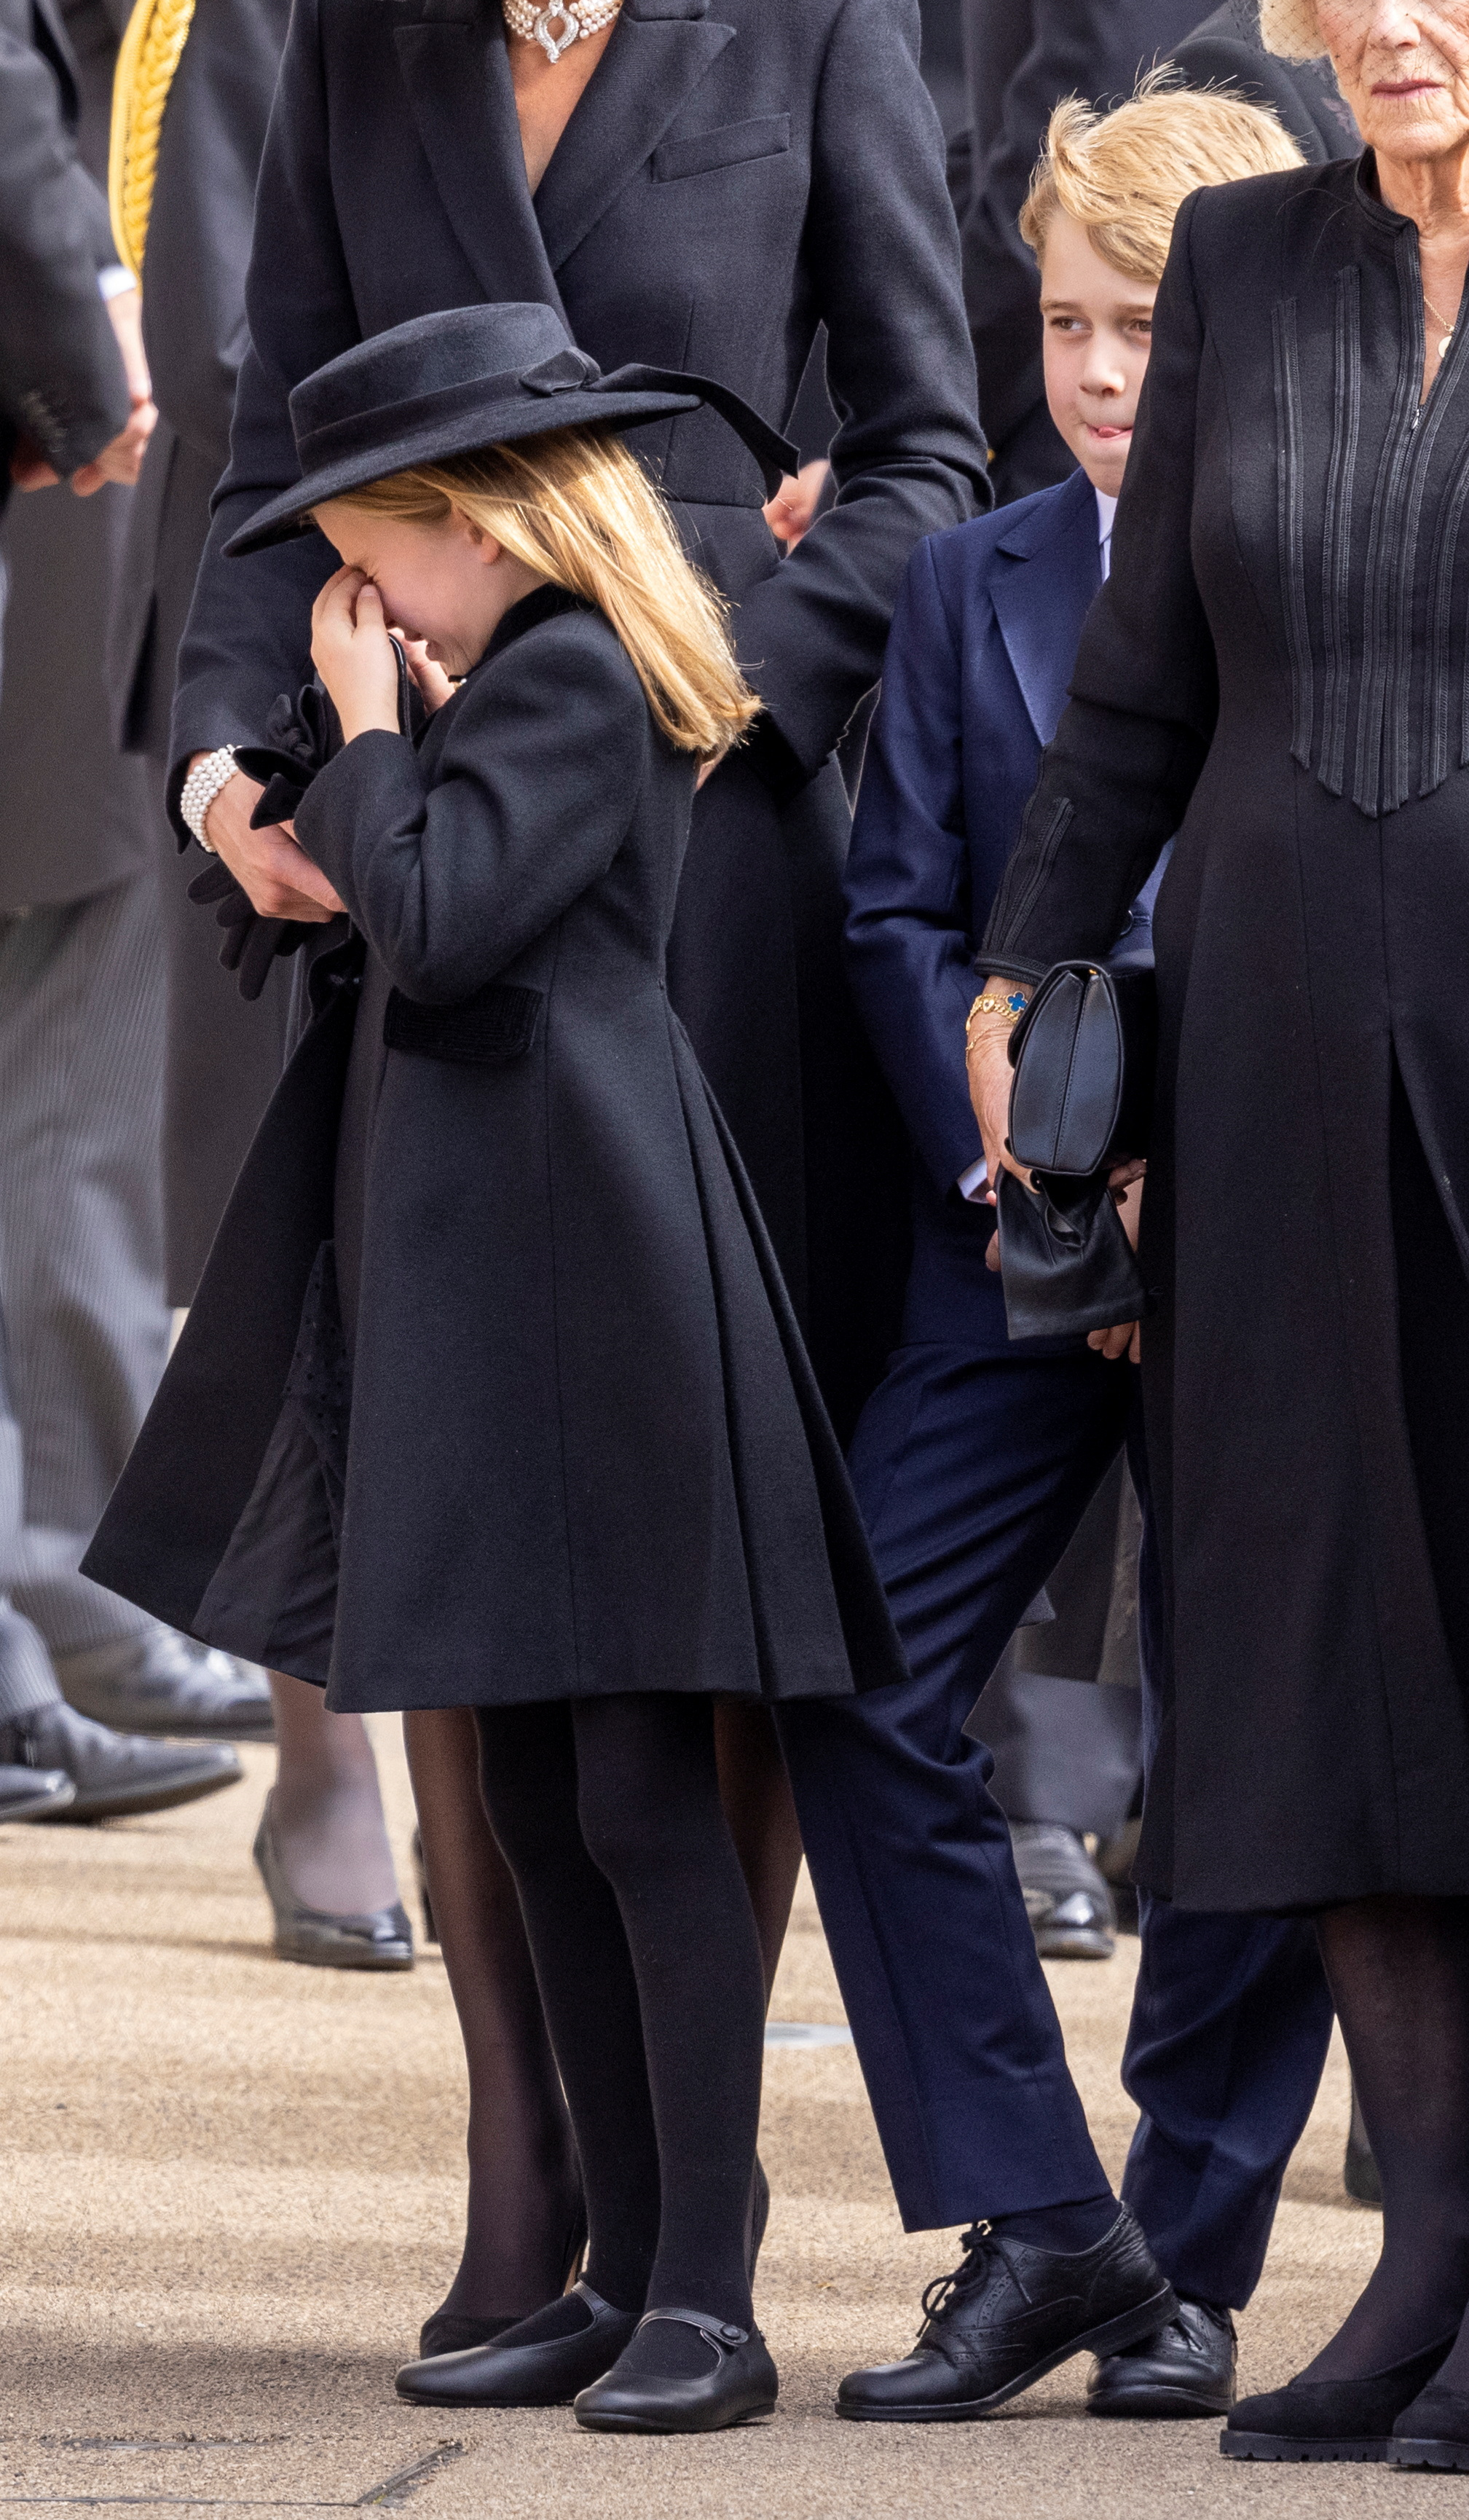 Las lágrimas de la princesa Charlotte en el funeral de Isabel II (Reuters)